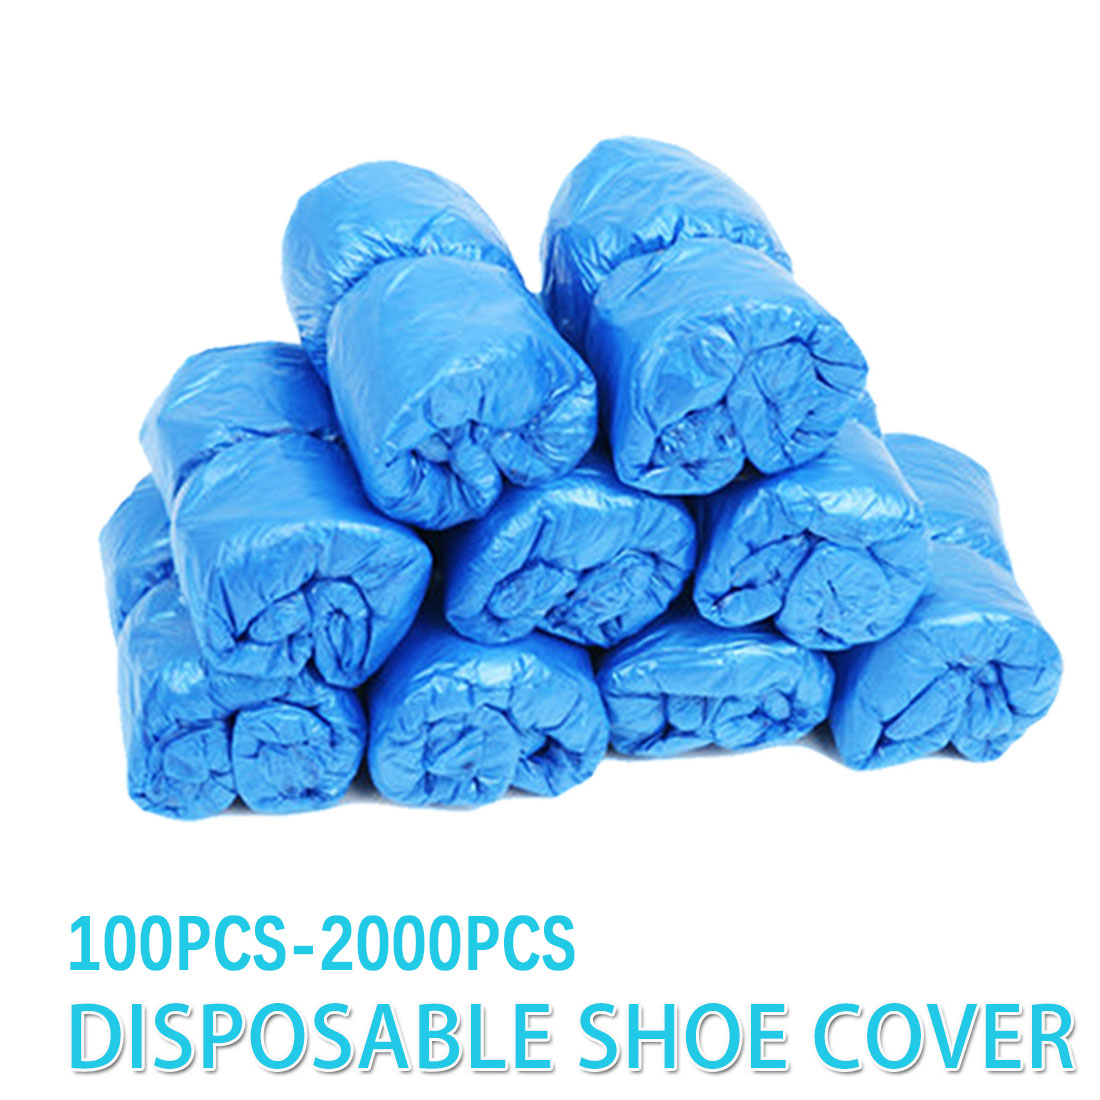 100-2000 stk. / 40 stk vandtætte bagdæksler af plast engangs skoovertræk til hjemmesko / regntiden